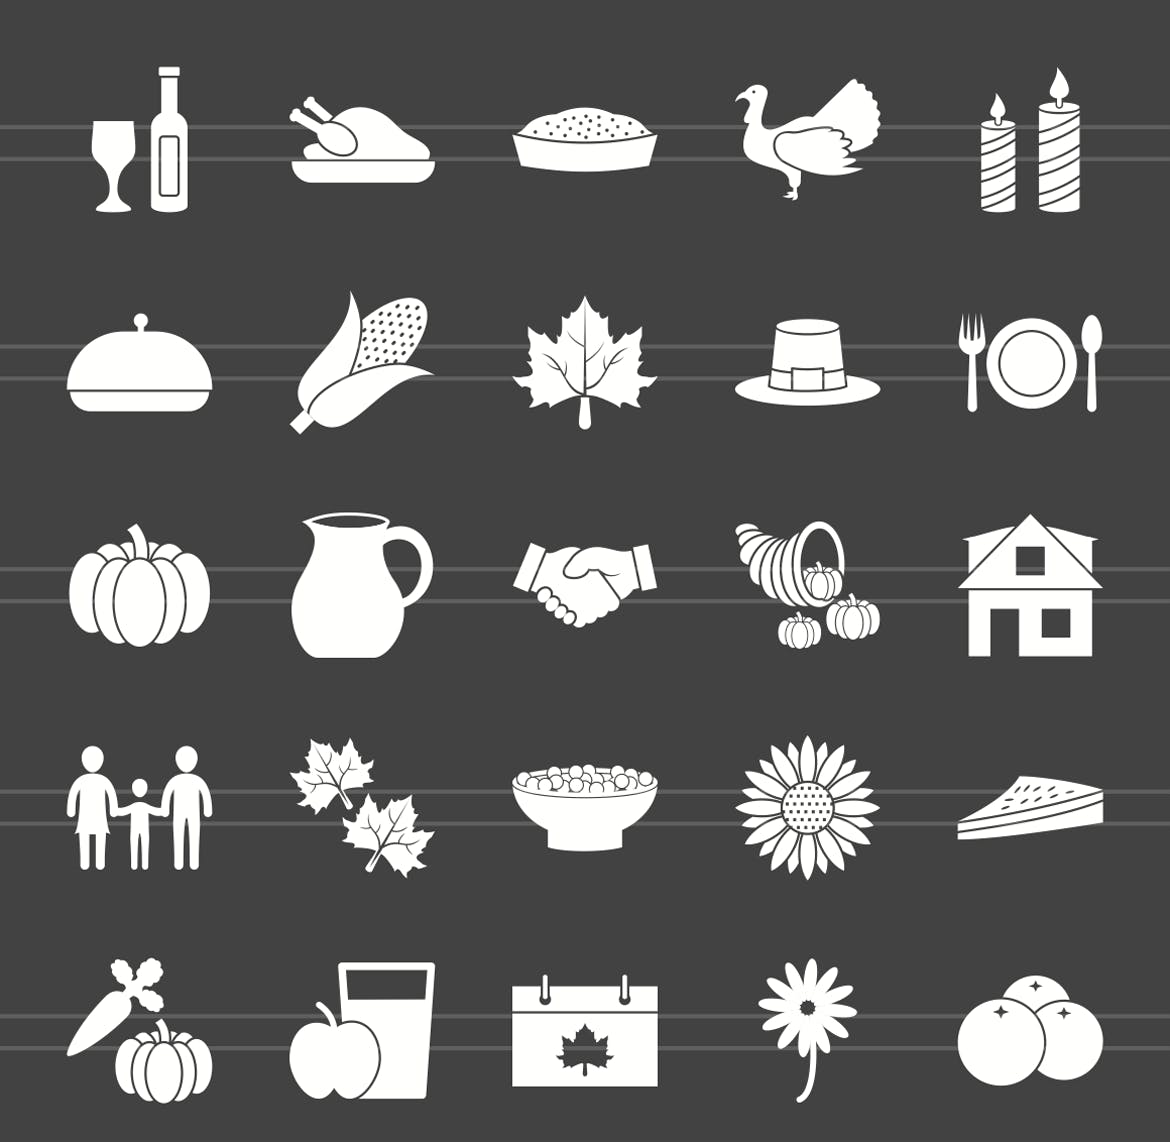 50枚感恩节主题反转色矢量字体蚂蚁素材精选图标 50 Thanksgiving Glyph Inverted Icons插图(1)